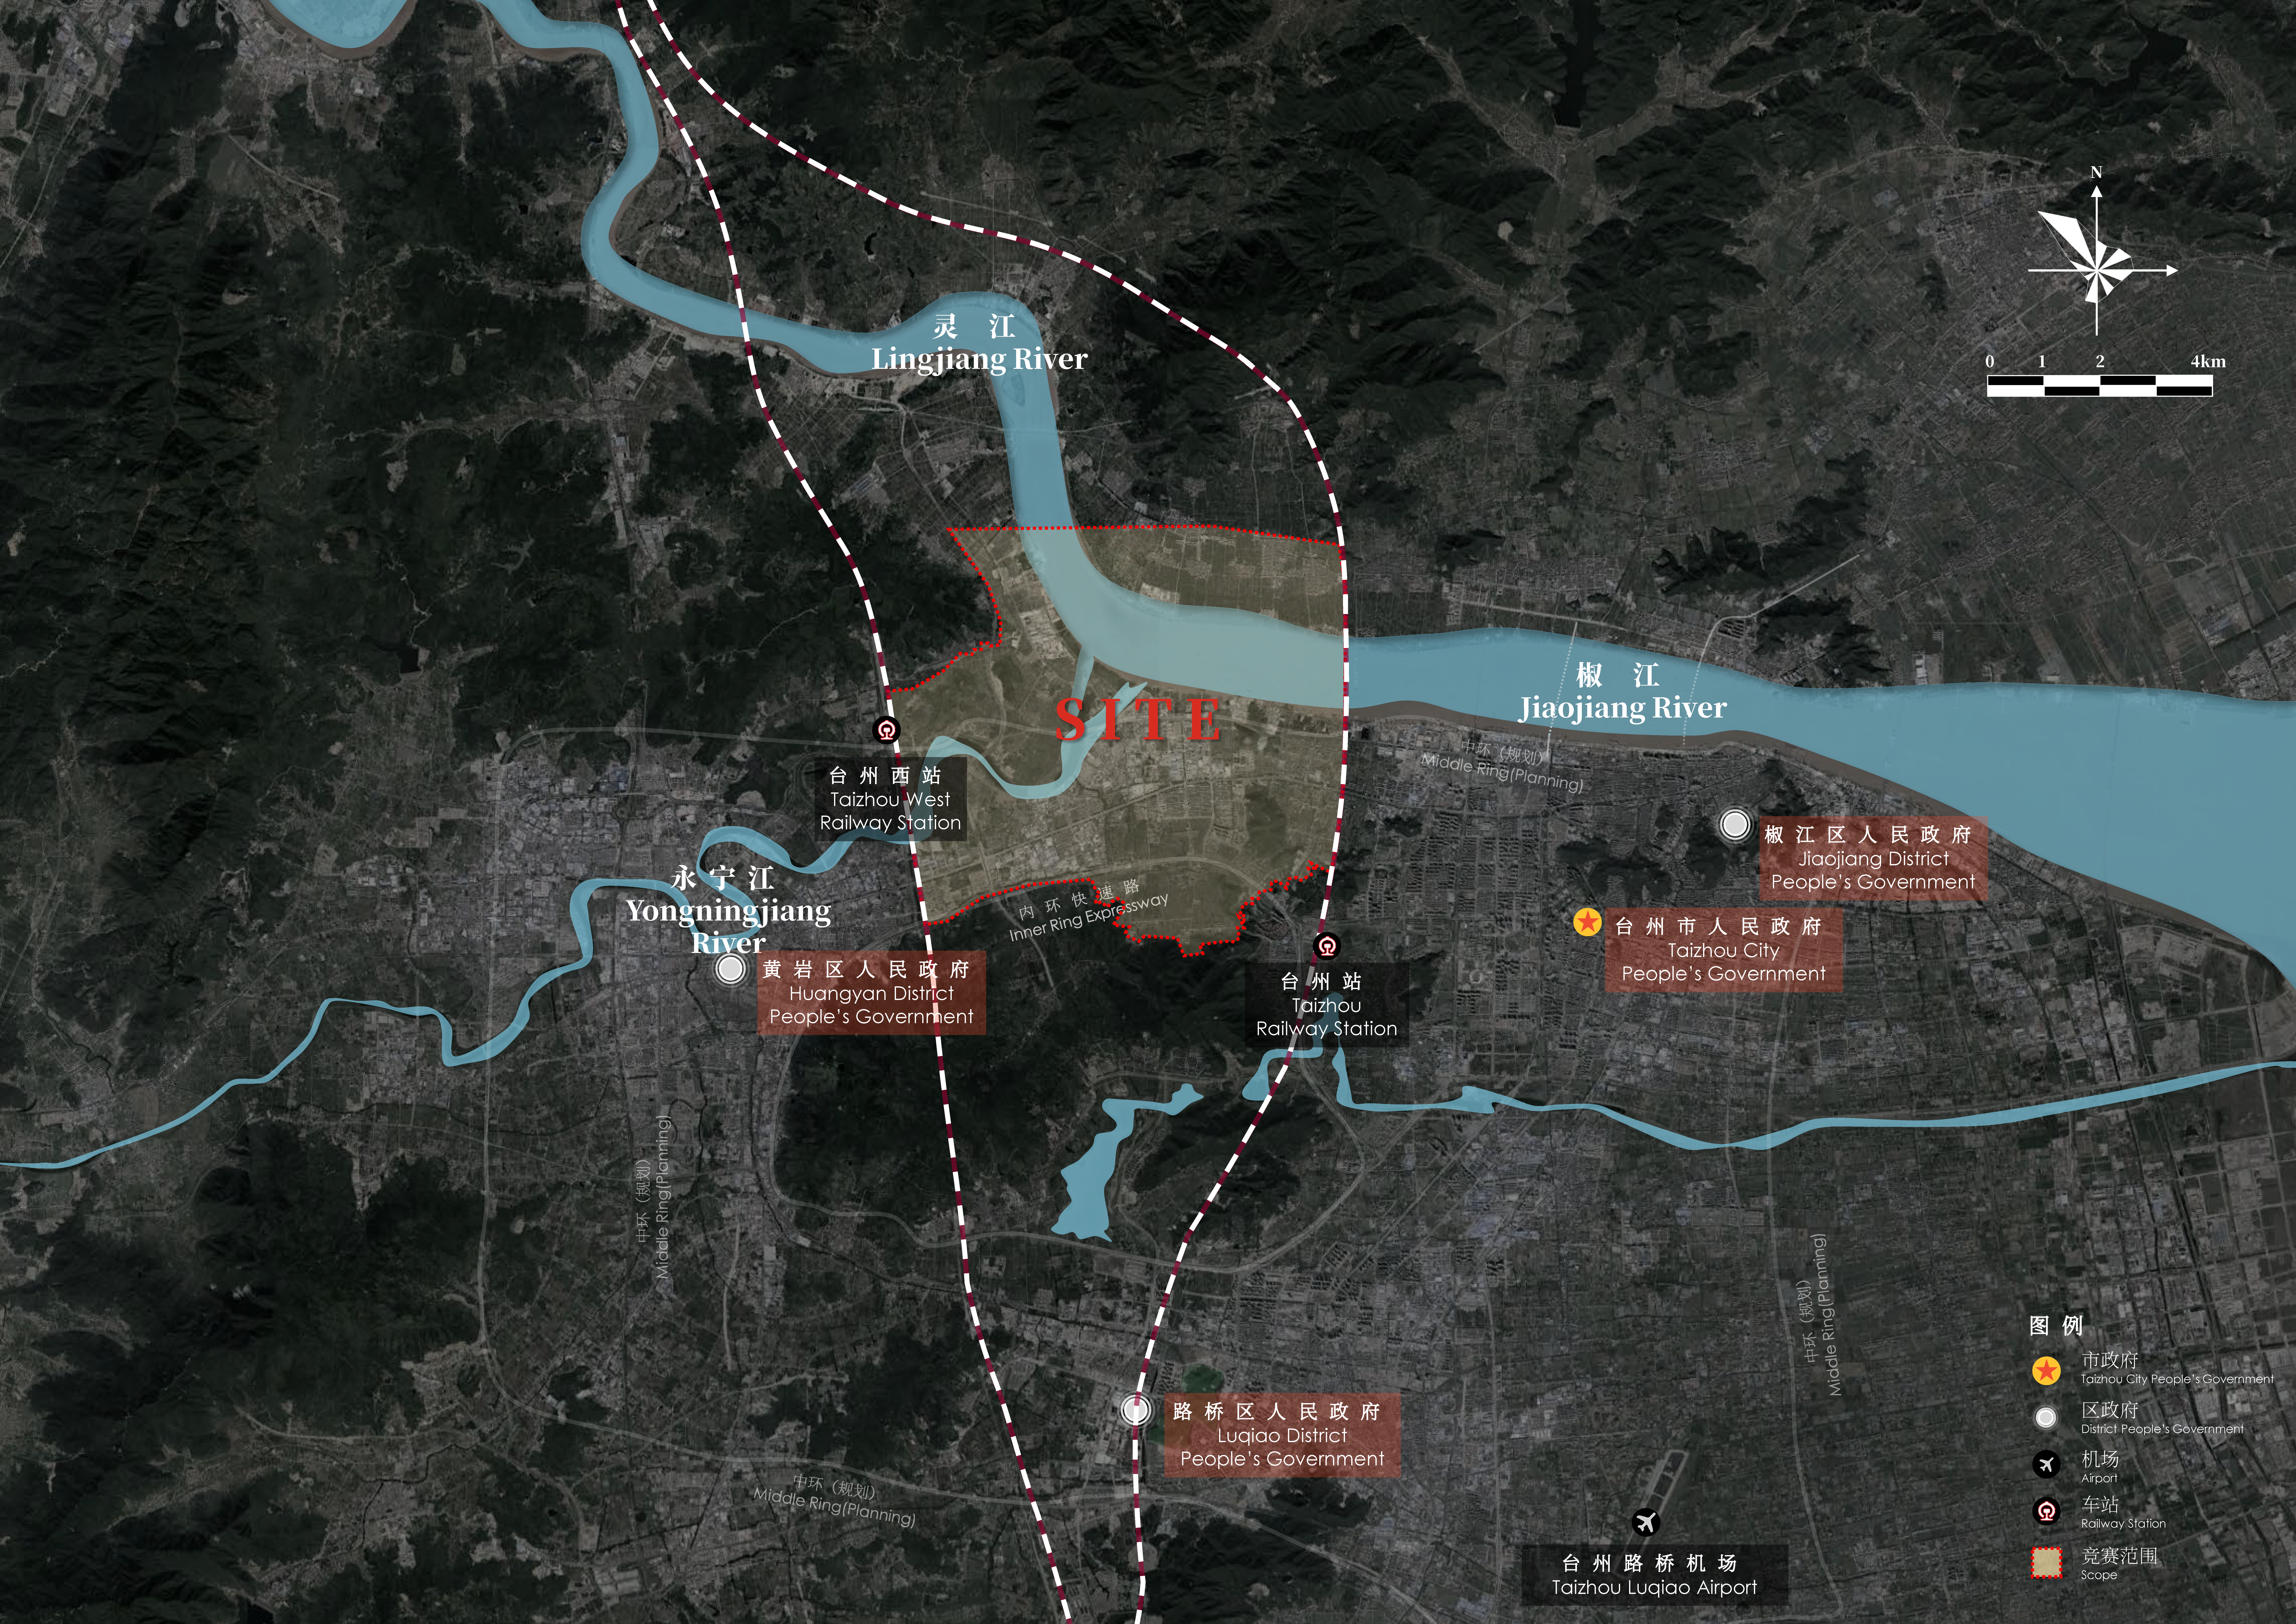 01三江口区域概念规划范围图 Scope Map of Sanjiangkou Region Conceptual.png